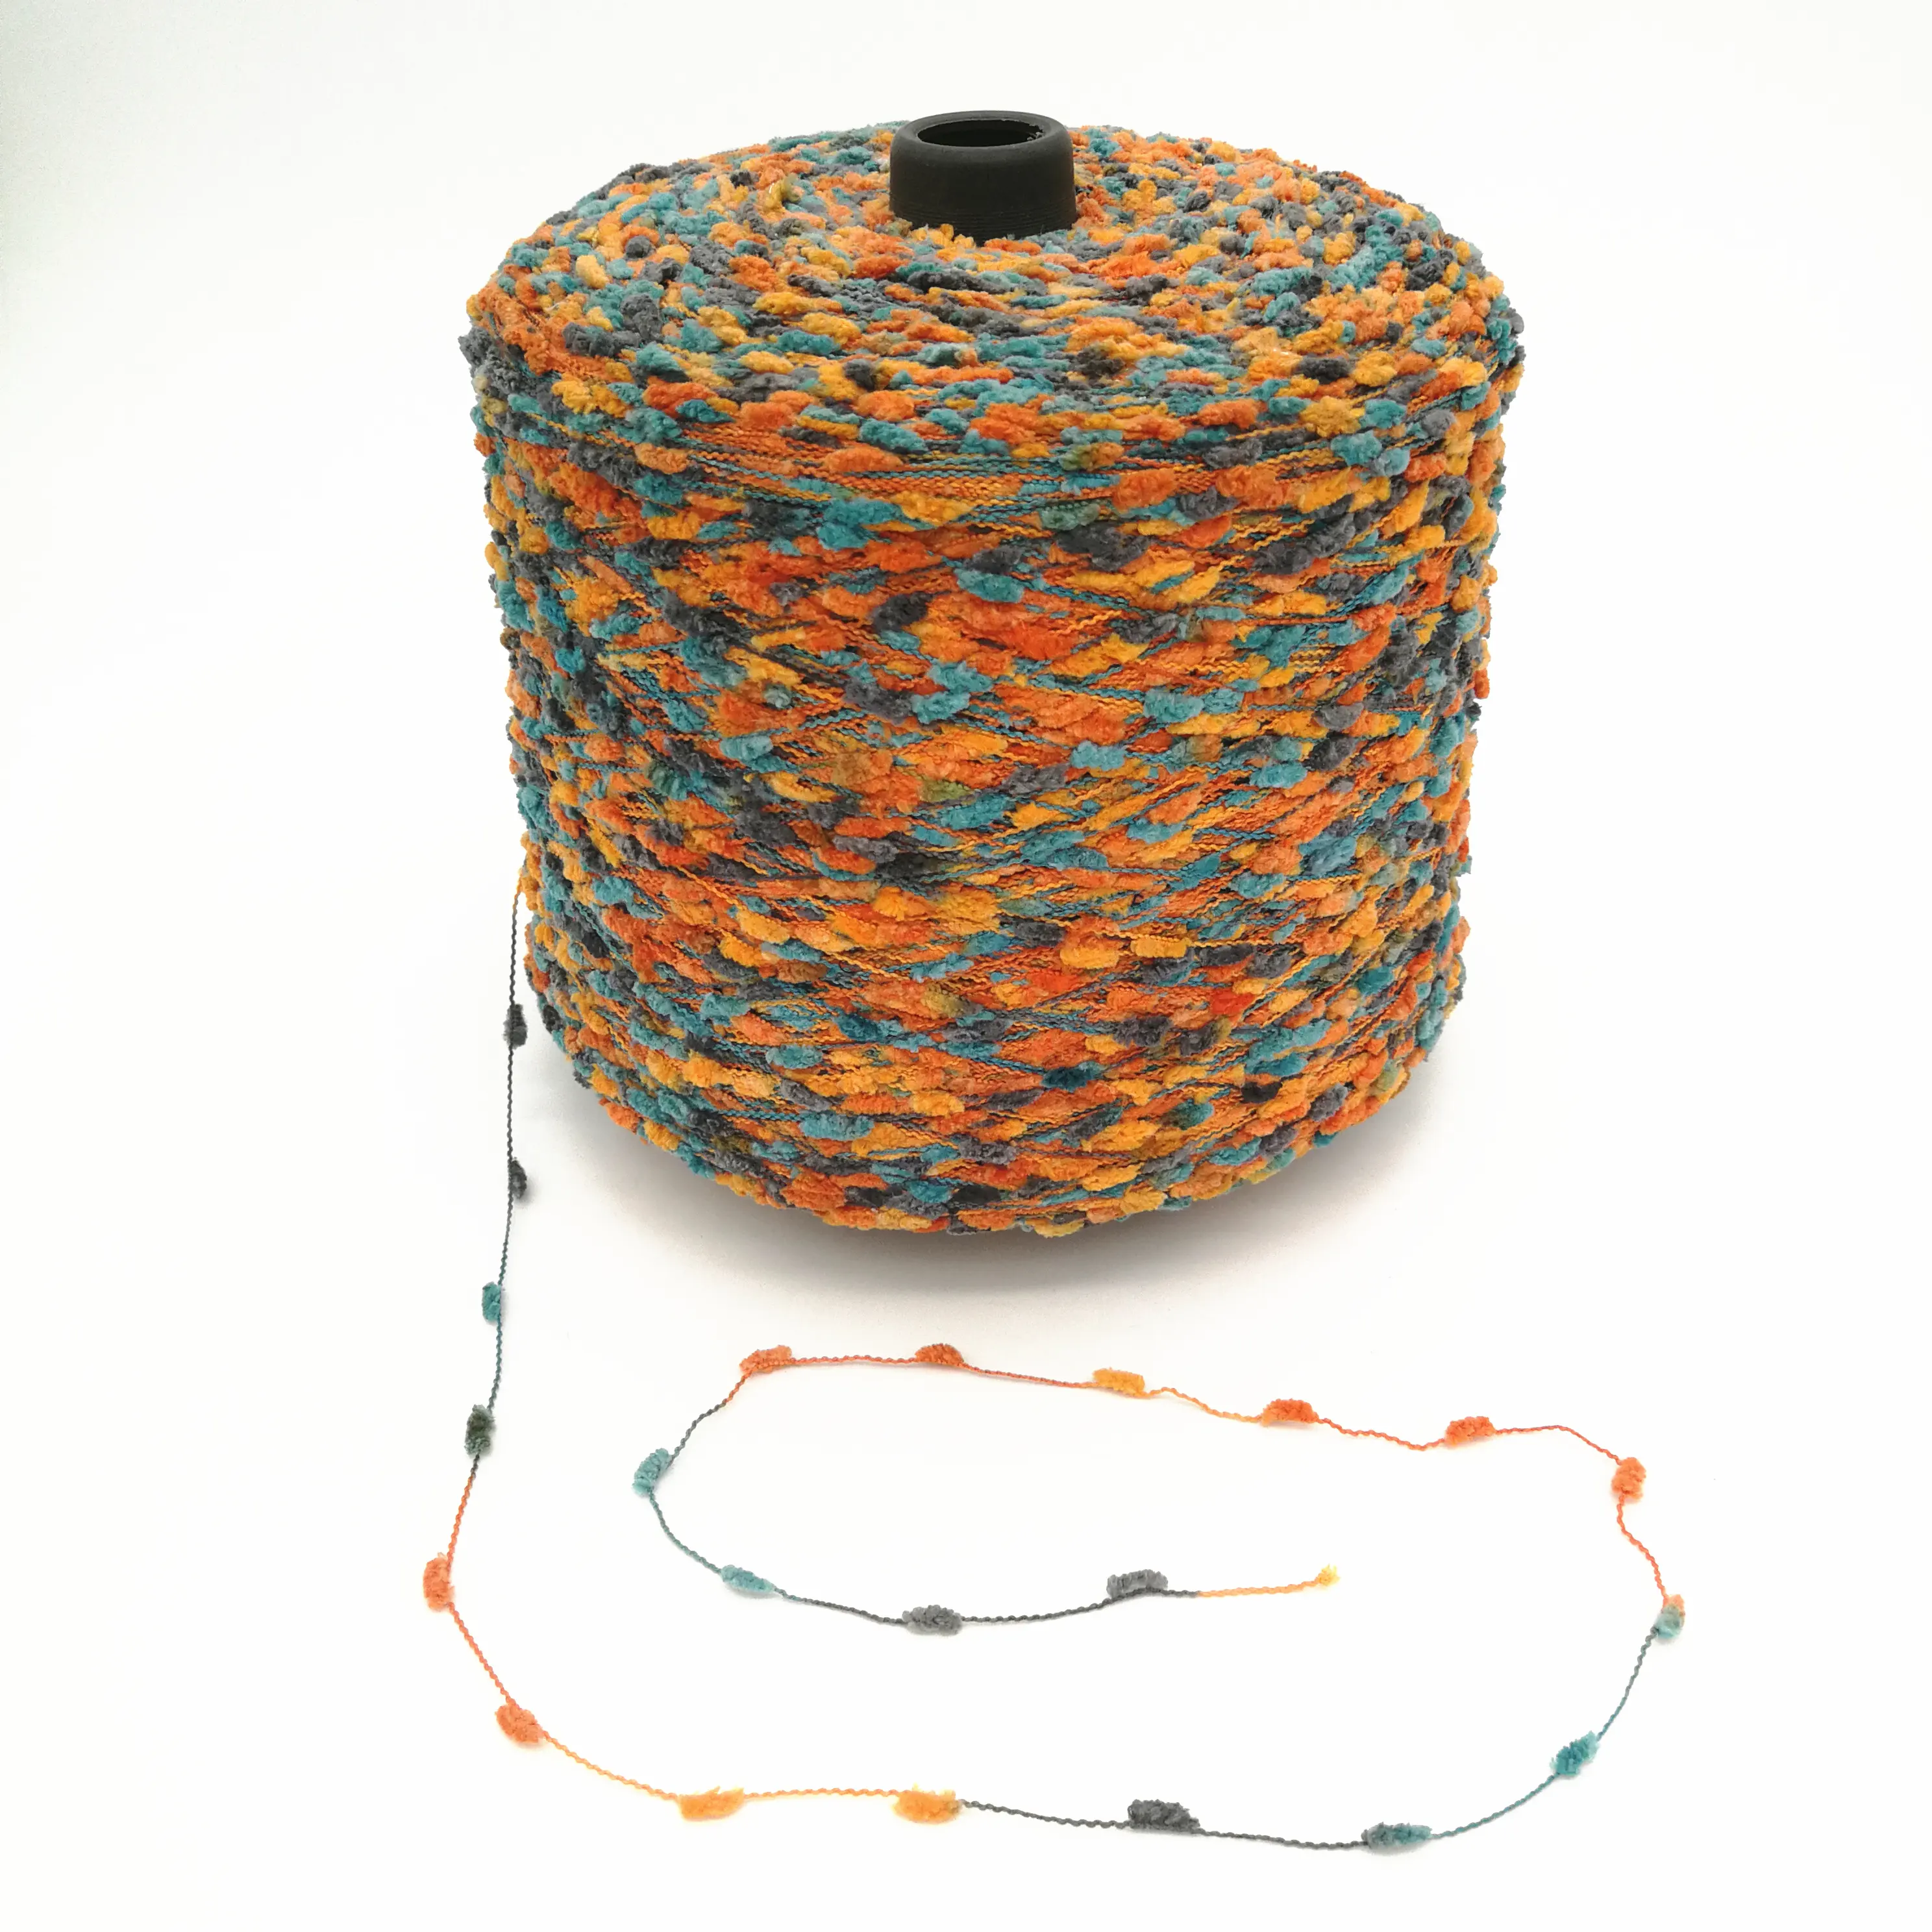 Nouveau doux en polyester coloré brosse à dents pompon fantaisie pour tricoter pull écharpe